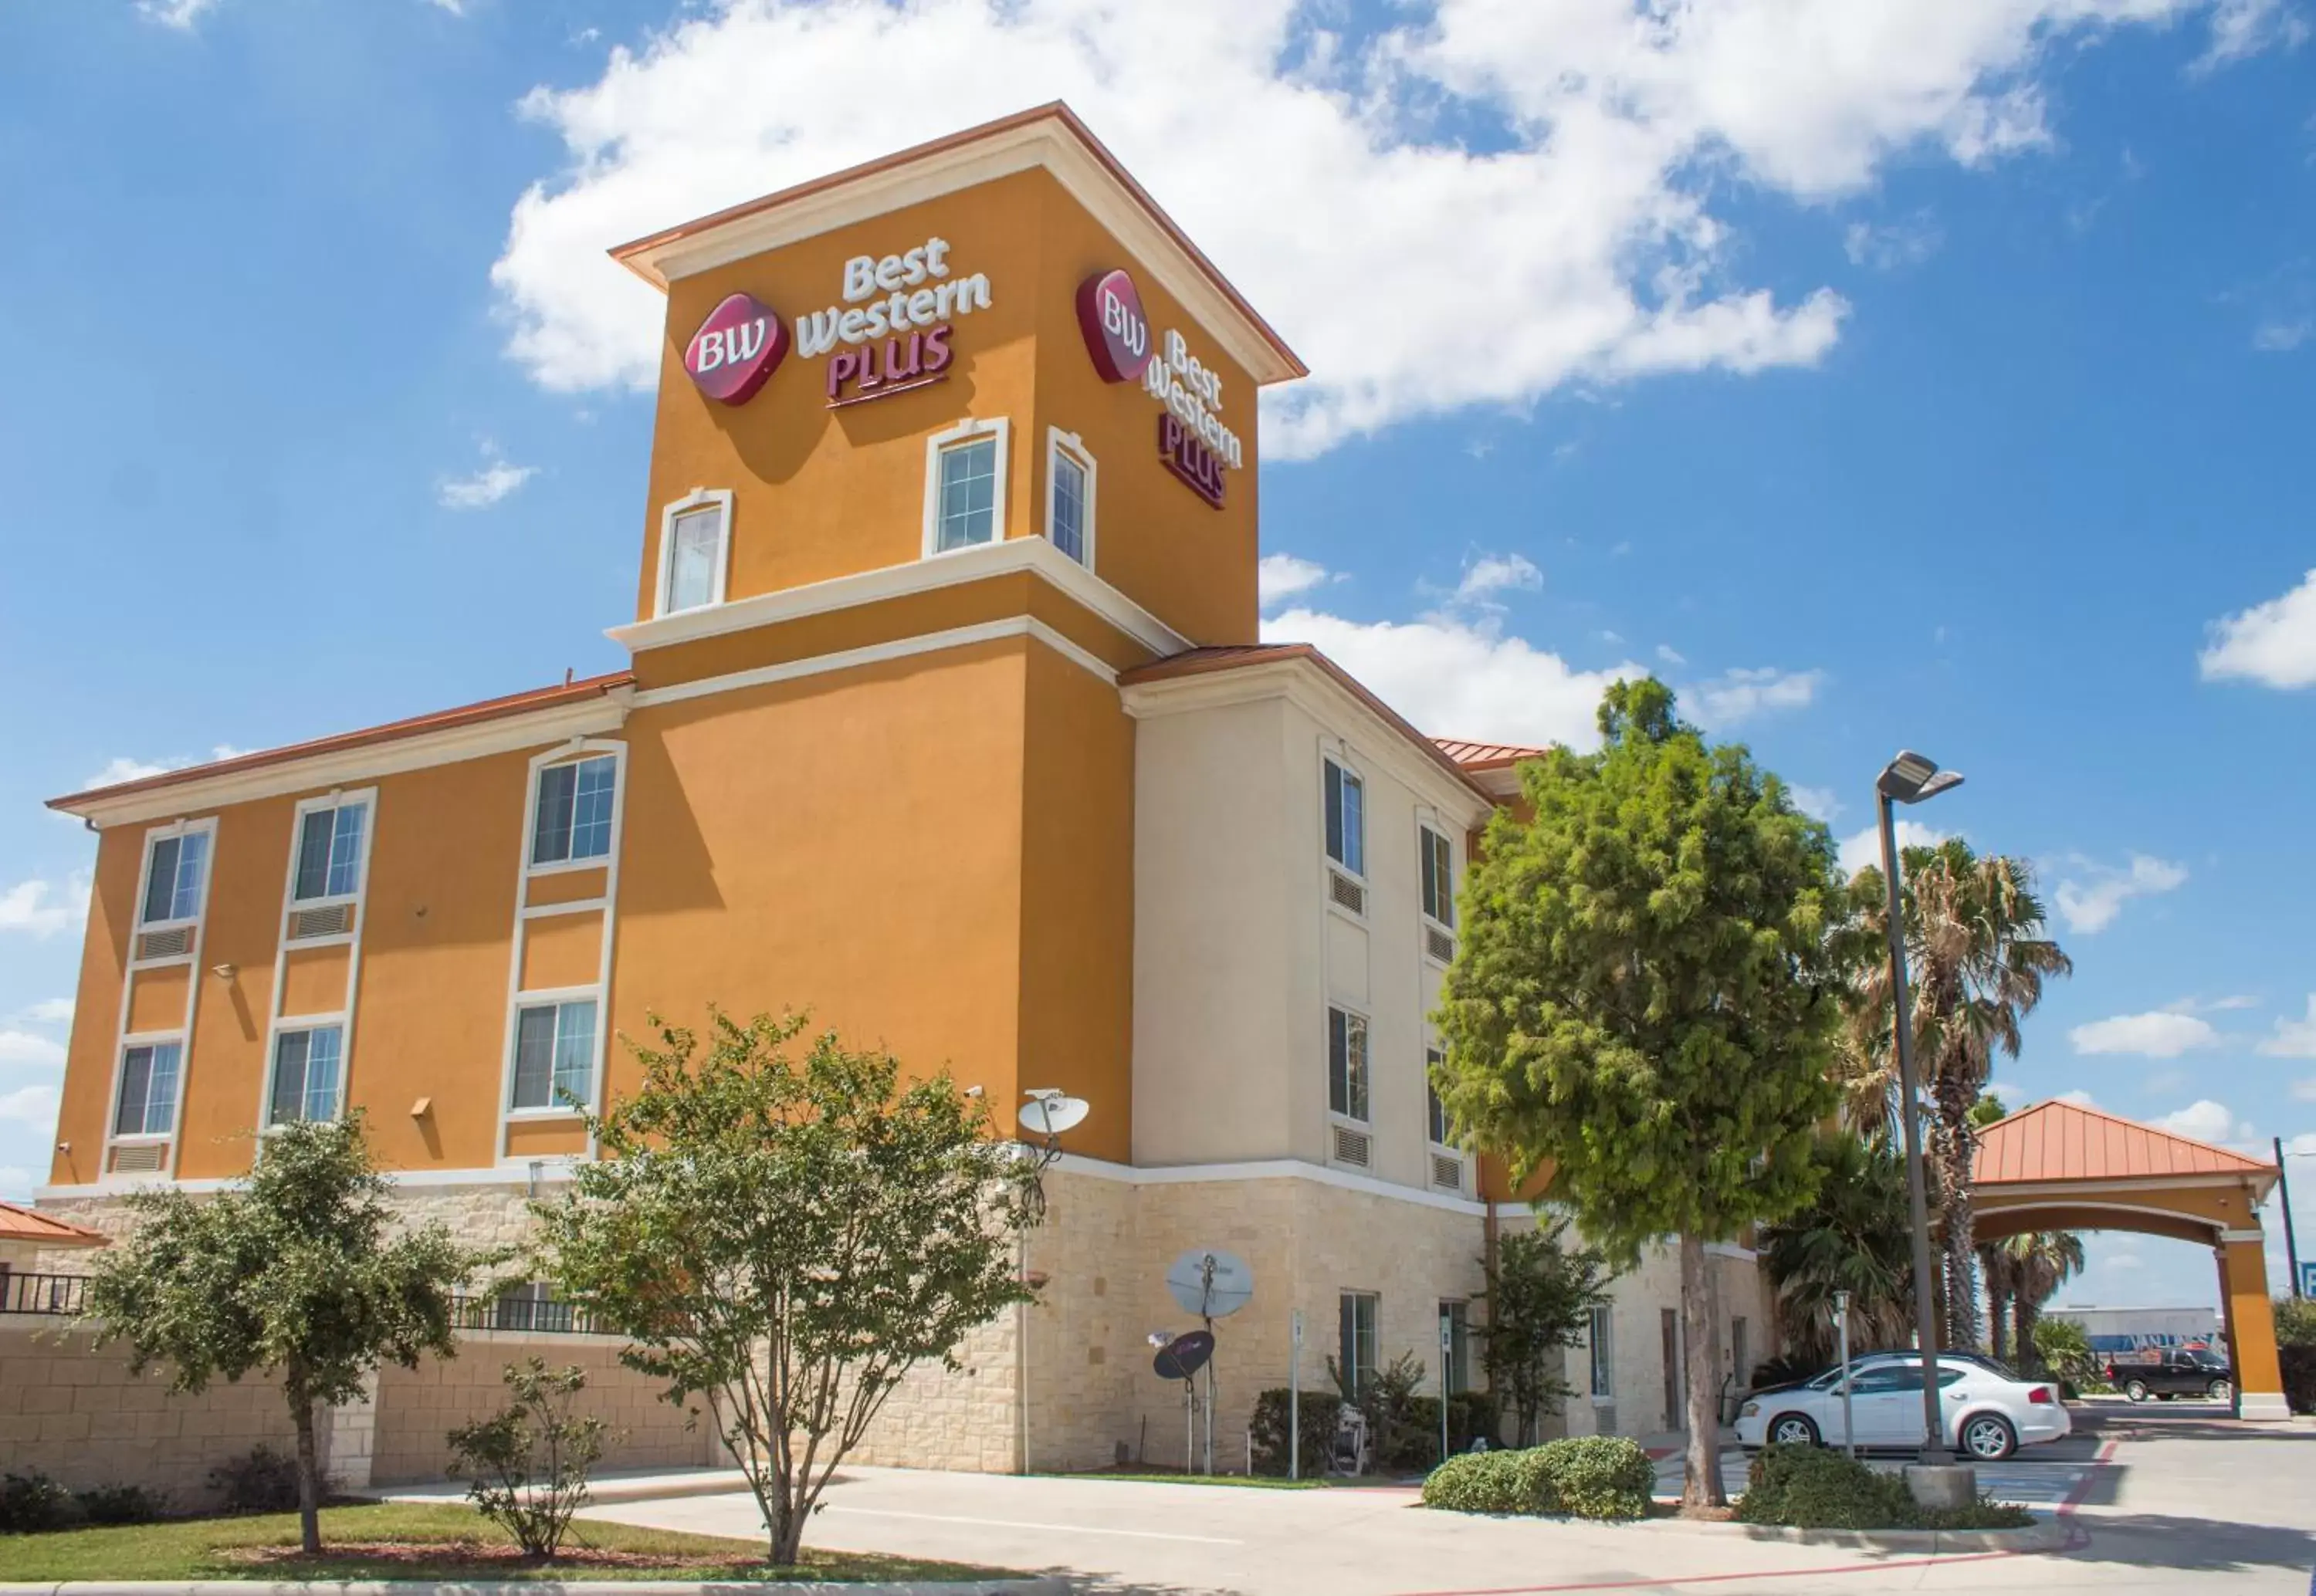 Facade/entrance in Best Western Plus San Antonio East Inn & Suites